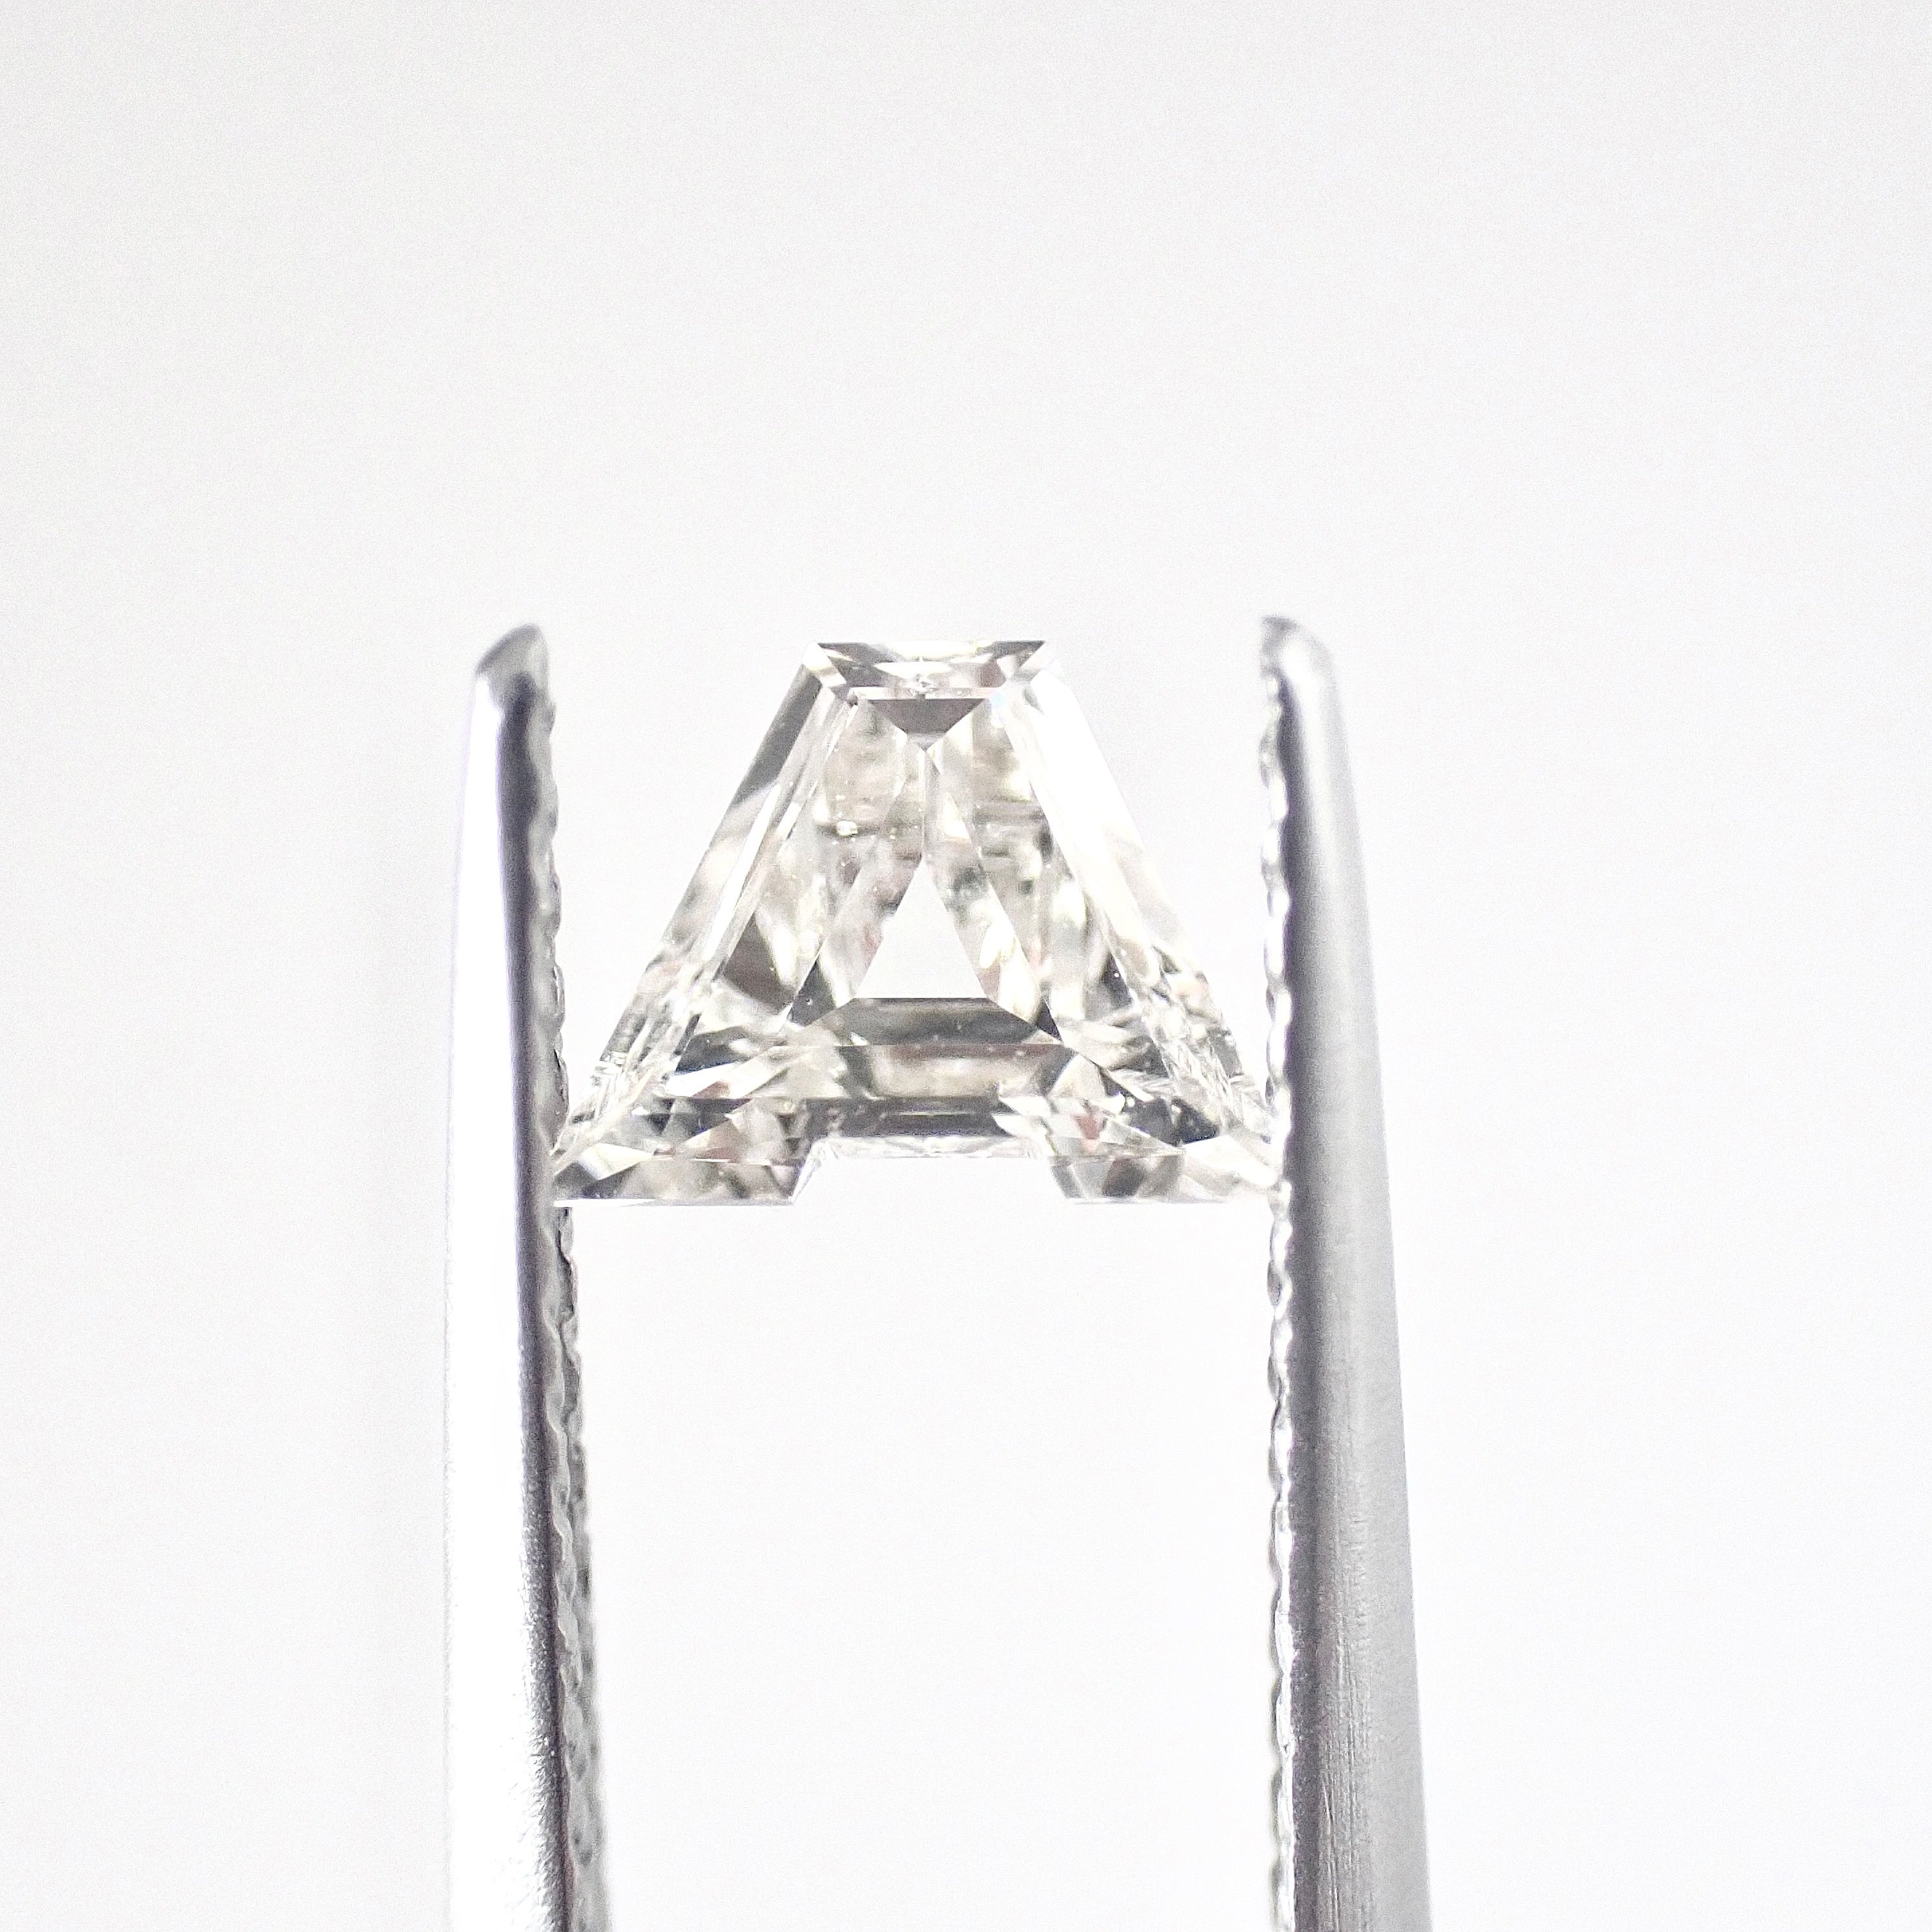 【卸売価格】イニシャル A 0.406ct ダイヤ ダイヤモンド ルース 裸石 天然ダイヤ 中央宝石研究所ソーティング付き Initial A  Diamond